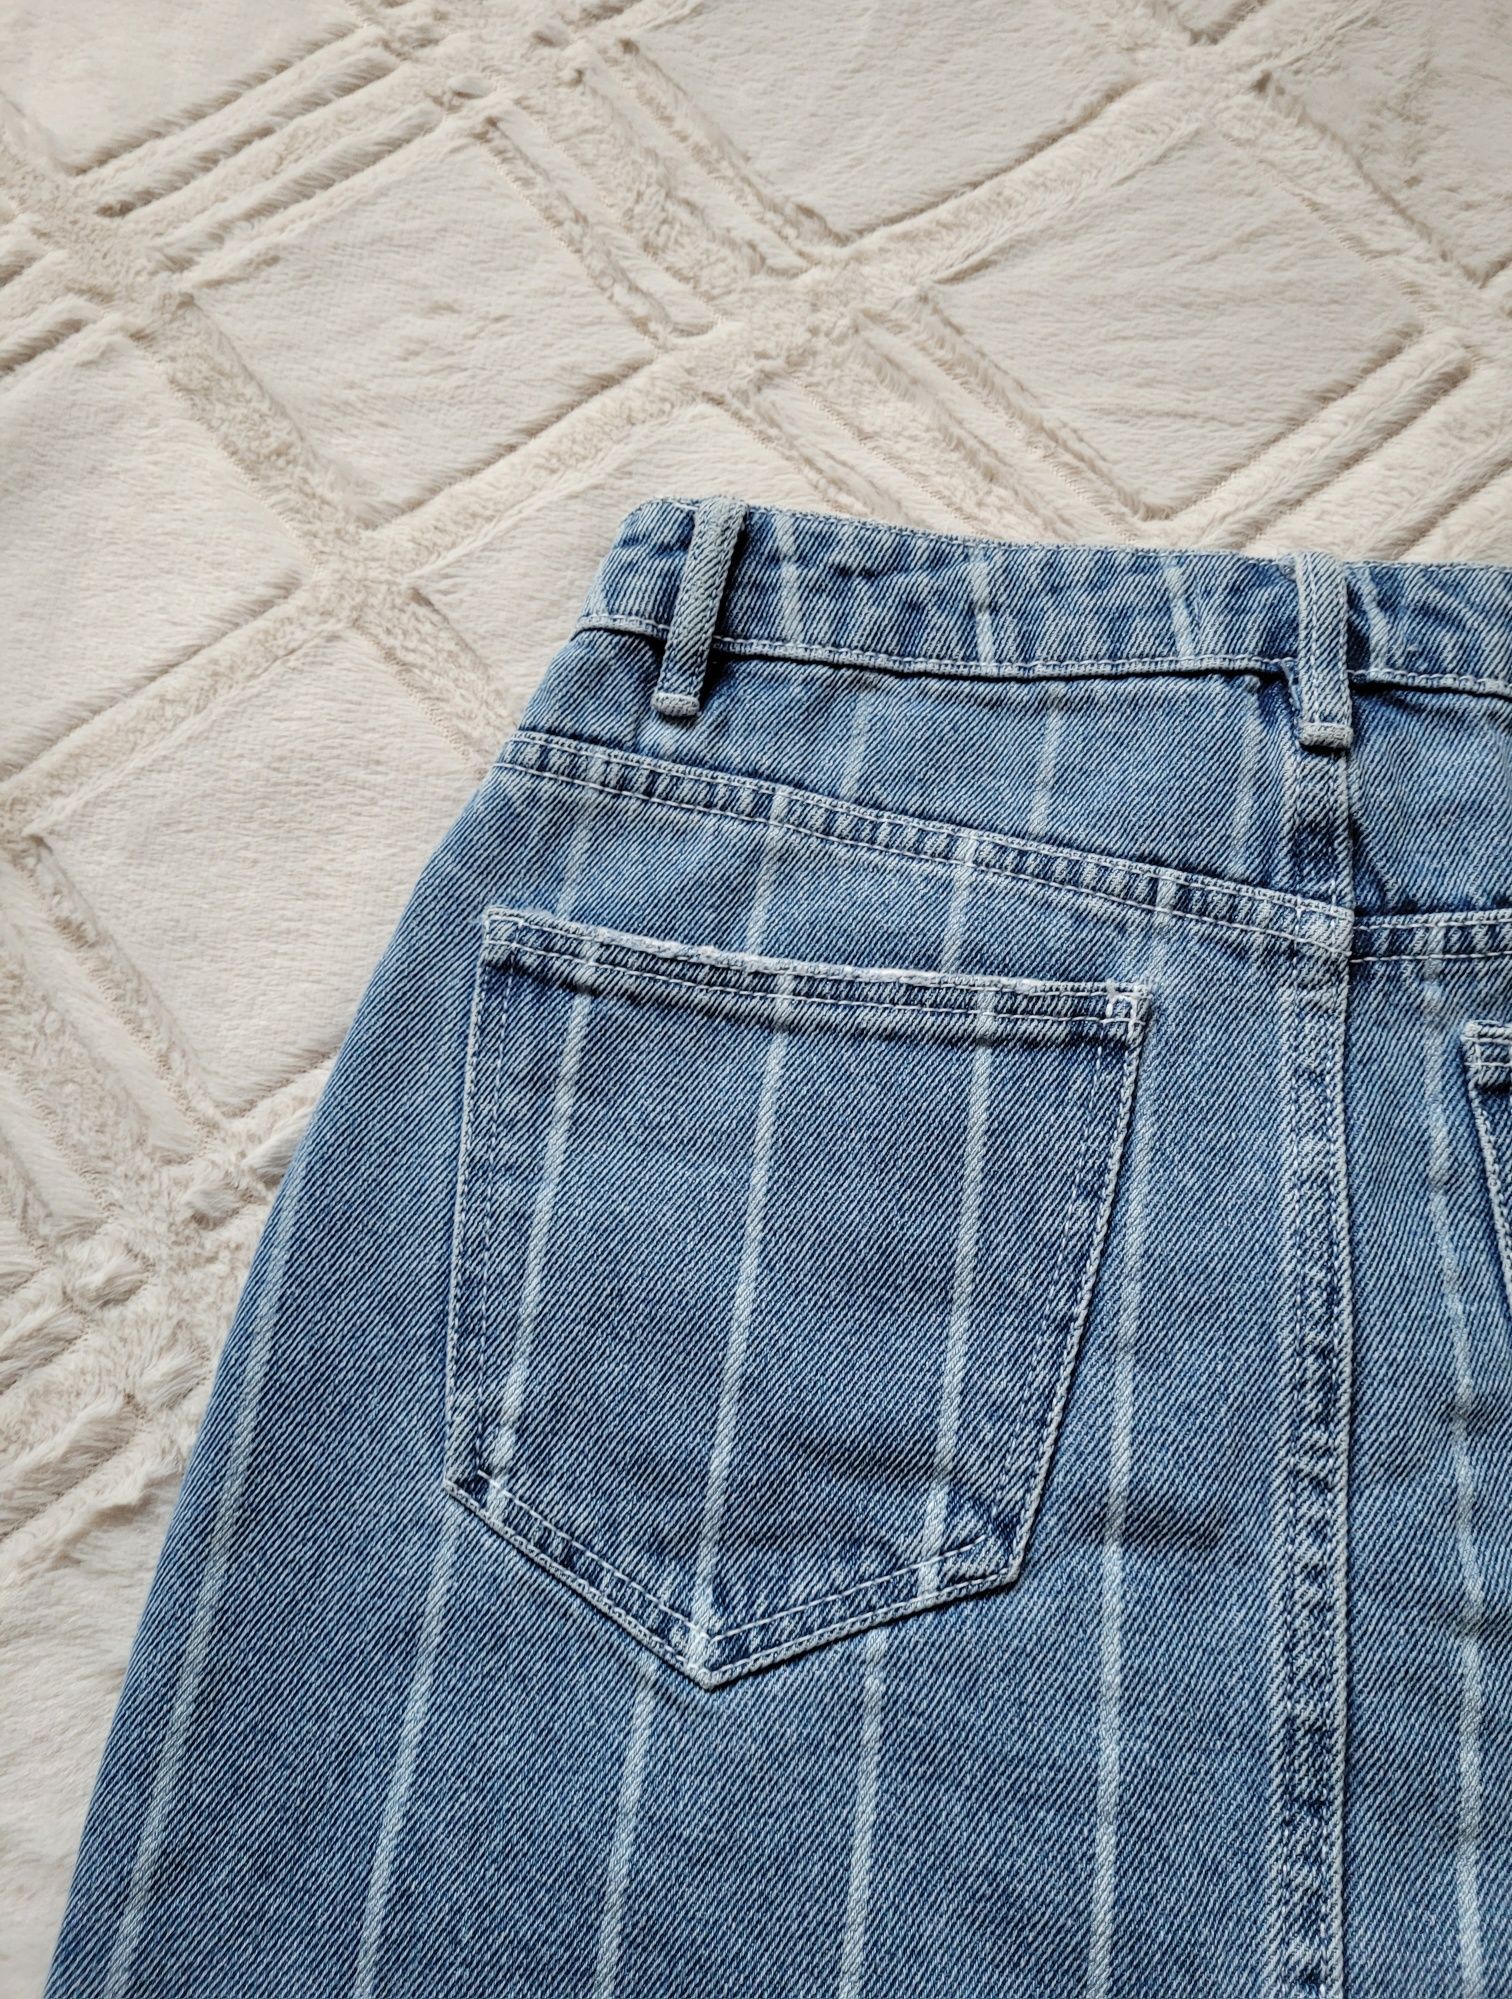 Mini spódniczka jeans tally weijl 34 XS
40
40